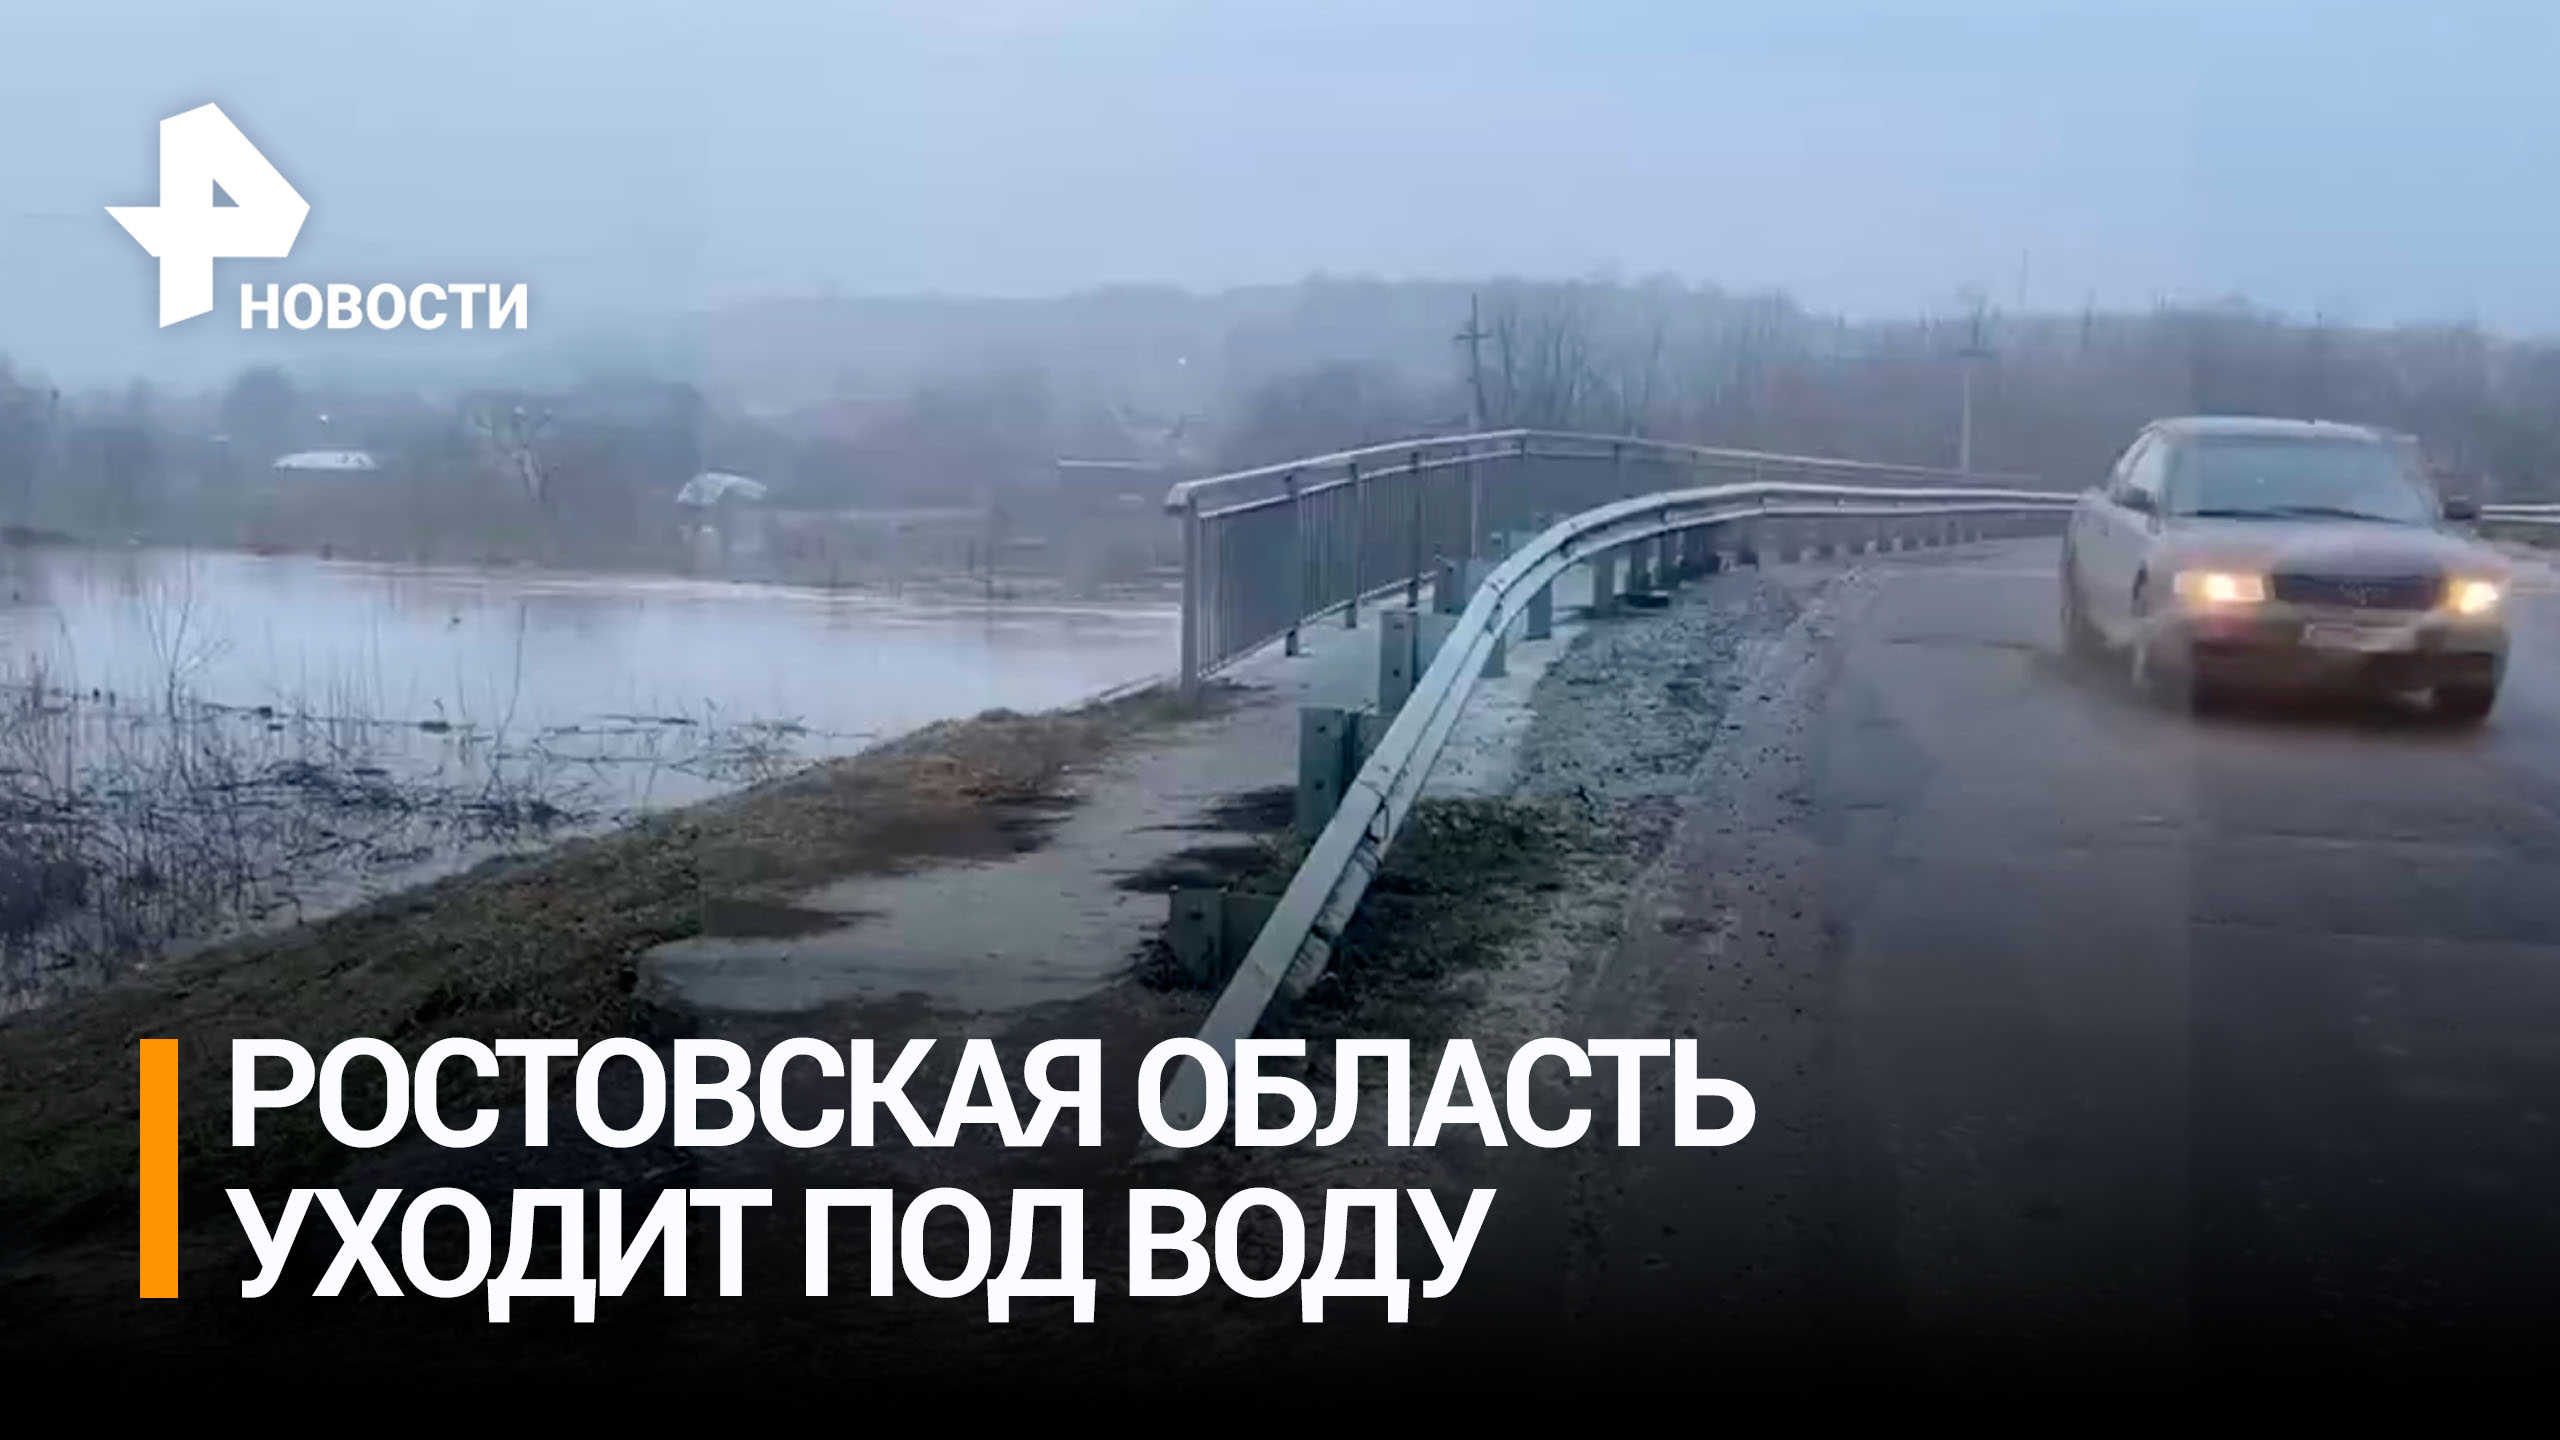 Часть Ростовской области продолжает находиться под водой из-за сильных осадков / РЕН Новости